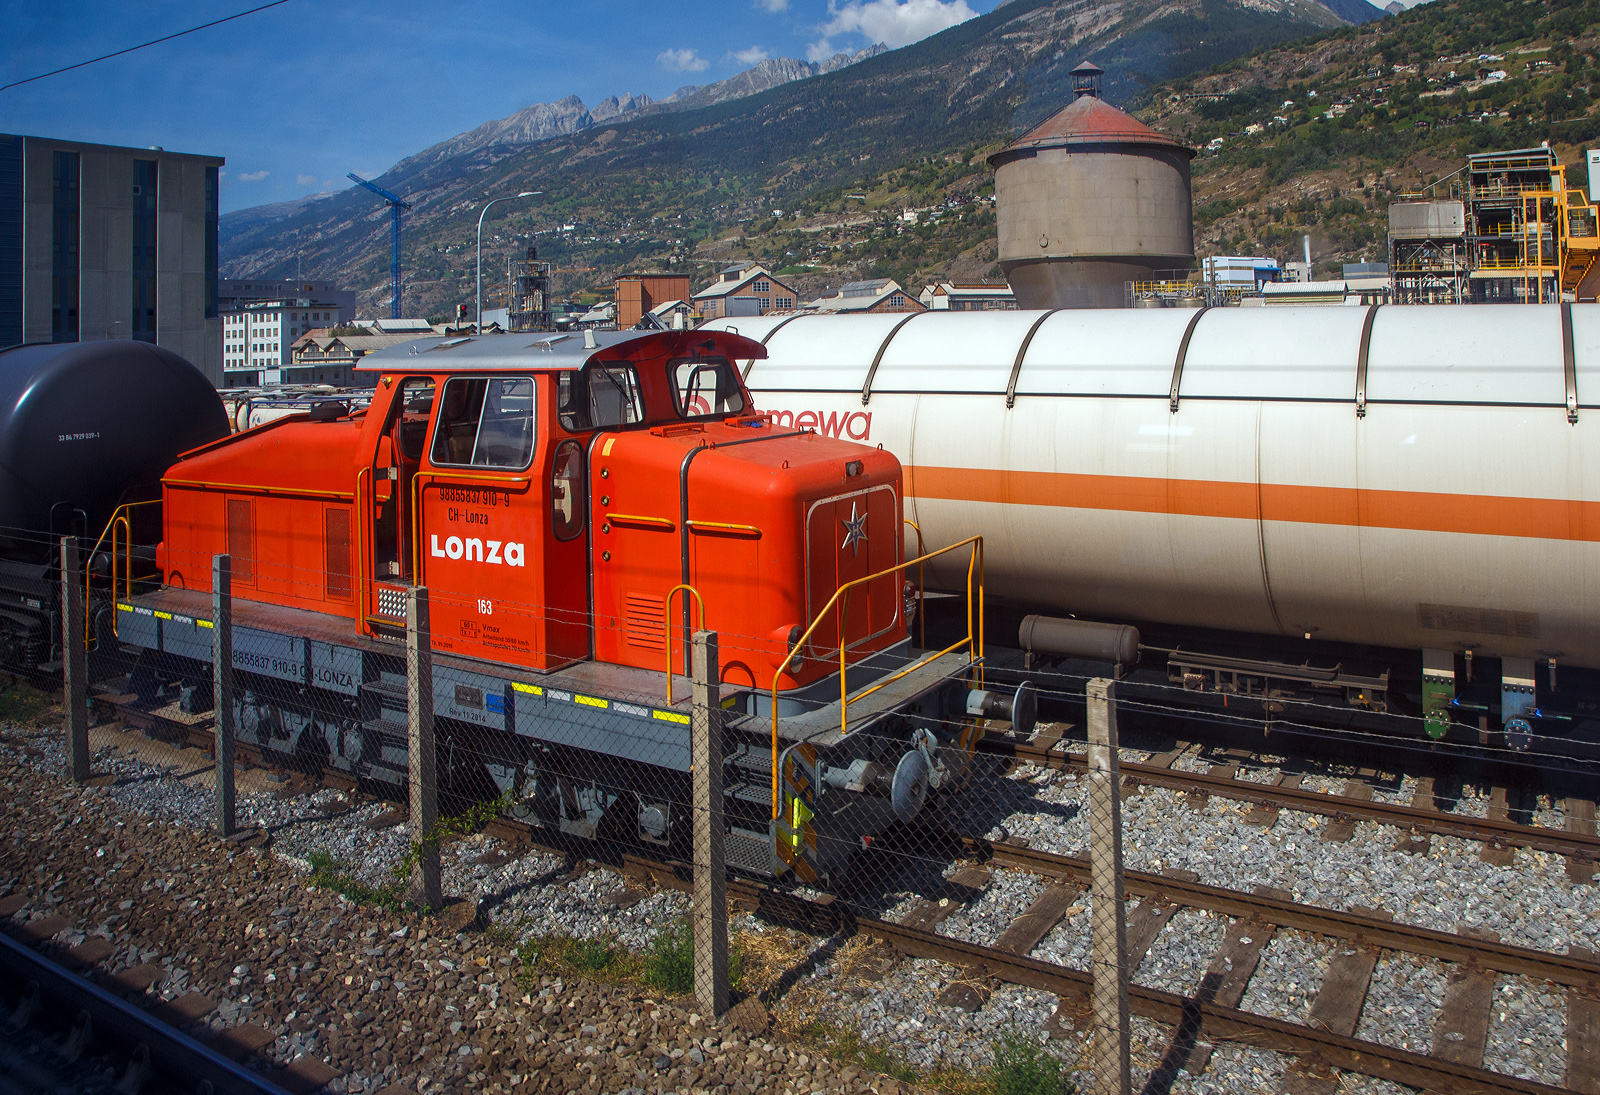 Aus dem Zug heraus, die Em 3/3 163  Rene  (98 85 5837 910-9 CH-LONZA) eine Henschel DHG 500 C der Lonza  AG (Visp), steht am 08.09.2021 in Visp.

Die Henschel  DHG 500 C wurde 1968 von Henschel in Kassel unter Fabriknummer  31239  gebaut und war erst als Mietlok im Einsatz. Im Jahr 1971 verkaufte sie dann Henschel an die Lonza AG in die Schweiz. 2014 wurde die Lok von der LSB Lok Service Balmer AG in Hinwil komplett neu revidiert und remotorisiert.

Die Henschel DHG 500 C ist eine dieselhydraulische Lokomotive, die von den Henschel-Werken gebaut wurde. Sie war vor allem für den Einsatz im schweren Werksdienst vorgesehen. Die Lok gehört zur ab 1962/63 angebotenen sogenannten vierten Generation der Henschel-Loks, der ersten Generation mit Gelenkwellenantrieb. Die Aufbauten wurden dabei ohne große Änderungen von der vorigen Generation übernommen.  Zur besseren Bogenläufigkeit war die mittlere Achse seitenverschiebbar gelagert. 

Von den Henschel DHG 500 C wurde zwischen 1963 und 1976 insgesamt  62 Exemplaren gebaut. Die Loks gingen vornehmlich an Bergbaugesellschaften und Stahlproduzenten sowie Chemieunternehmen. So erwarb die Rheinelbe Bergbau AG in Gelsenkirchen elf Loks und die Hibernia AG, Zechenbahn- und Hafenbetriebe Ruhr-Mitte in Gladbeck neun Loks vom Typ DHG 500 C. Die meisten Lokomotiven wiesen bei Auslieferung den Henschel-Standardanstrich in Blau mit zwei horizontalen Zierstreifen an den Vorbauten auf. Die durch Zusammenschluss entstandene Ruhrkohle AG hatte zeitweise 31 Lokomotiven dieses Typs im Bestand. 

TECHNISCHE DATEN (nach Umbau):
Spurweite:  1.435 mm (Normalspur)
Achsformel: C
Länge über Puffer:  9.900 mm
Höhe:  4.225 mm
Breite: 3.040 mm
Fester Radstand:  3.700 mm
Kleinster bef. Halbmesser:  80 m
Dienstgewicht:  60 t
Höchstgeschwindigkeit: 30 km/h / 60 km/h (Schleppfahrt 70 km/h)
Treibraddurchmesser:  1.000 mm
Motor:  neuer Deutz V6 Motor mit elastischer Vorschaltkupplung. inkl. Partikelfilter (Vollstrombrenner mit aktiver Regeneration), 
der ehemalige Motor war ein Henschel 12V 1416 
Installierte Leistung:  368 kW (500 PS)
Getriebe:  Voith
Leistungsübertragung:  hydraulisch (über Gelenkwellen)
